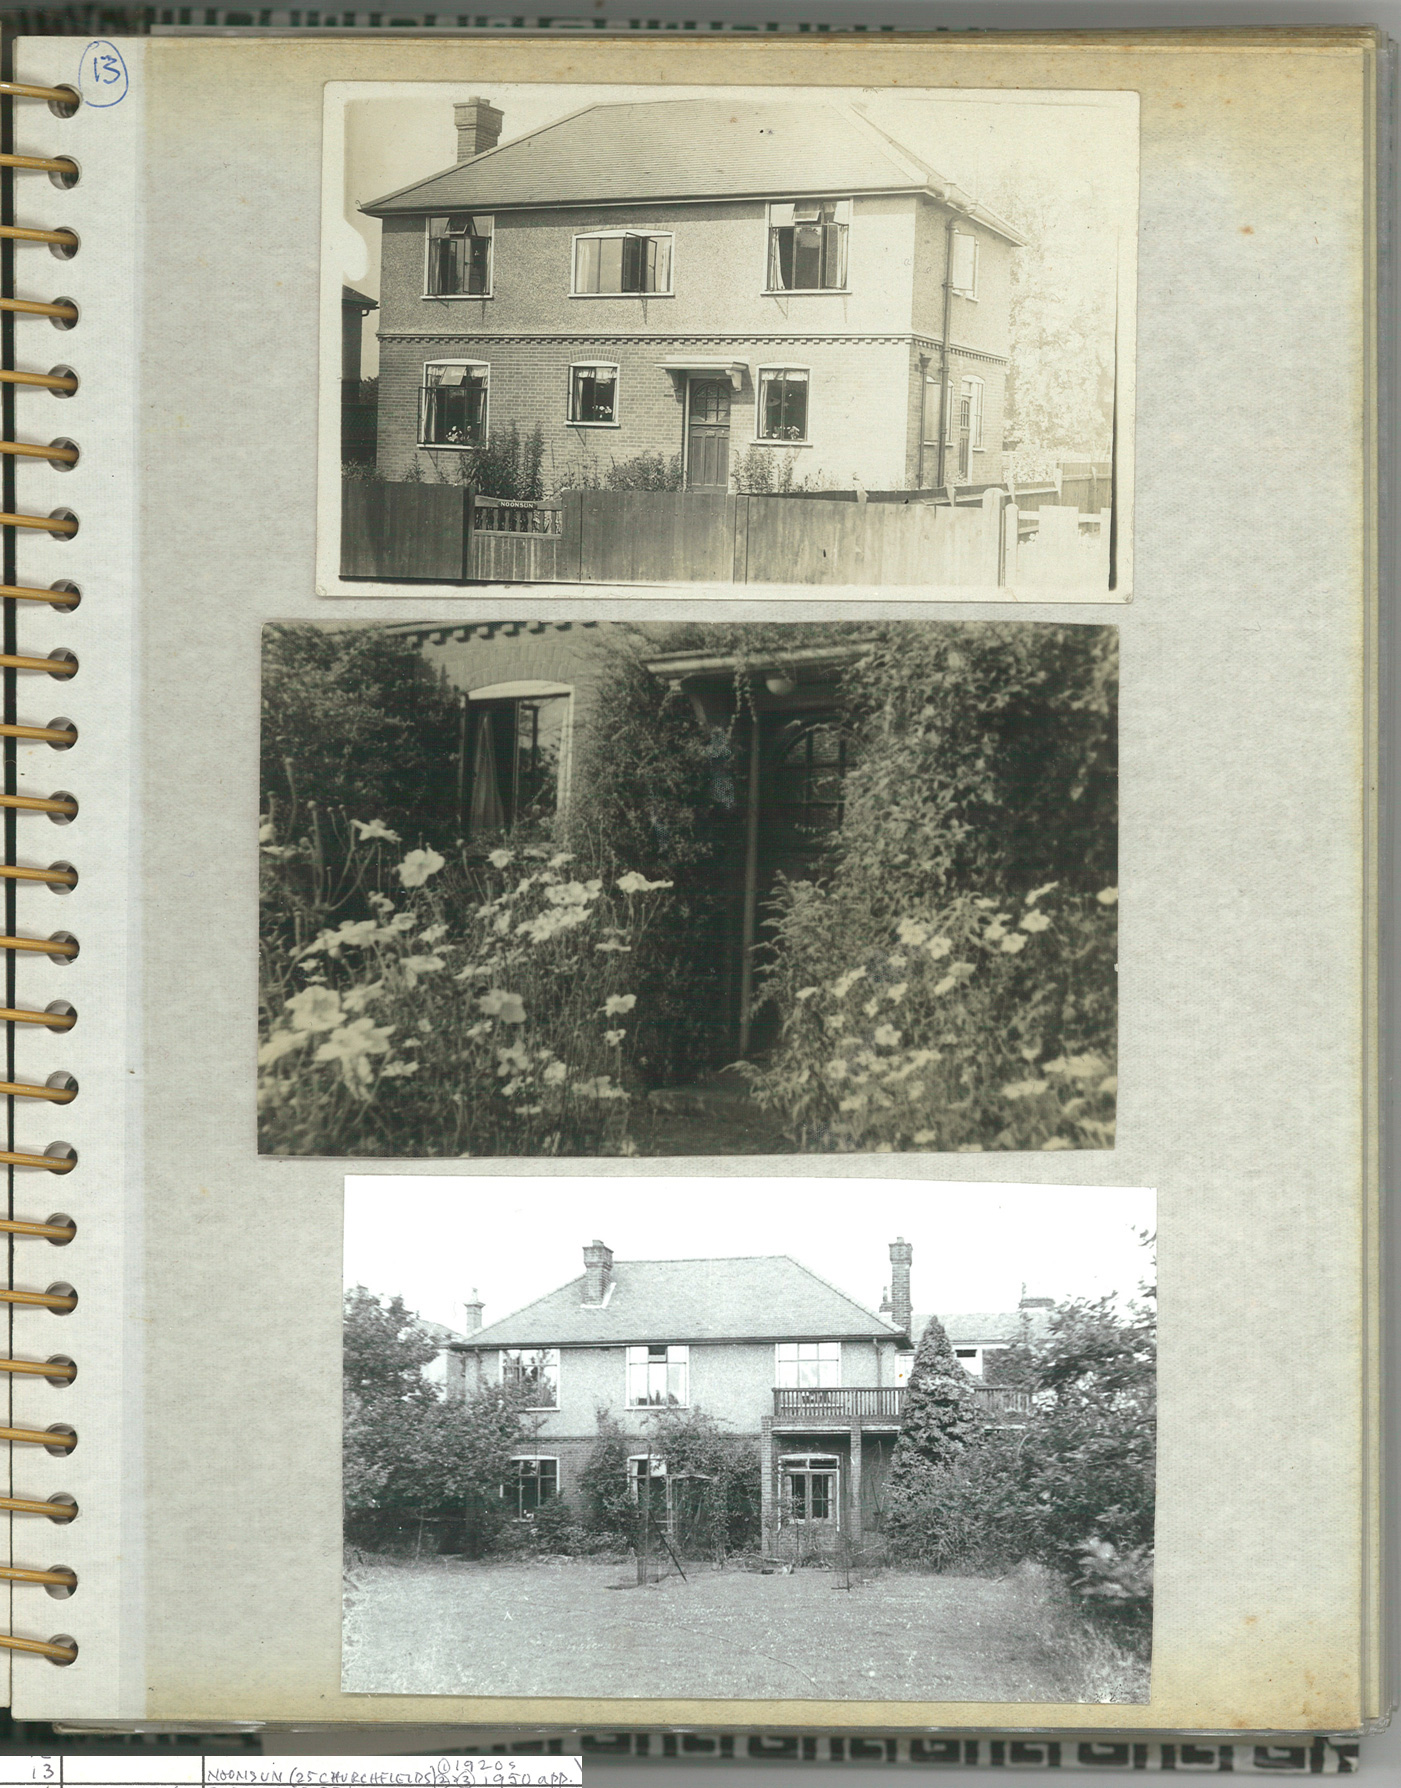 P13: Noonsun 25 Churchfields, Broxbourne, Herts, 1920s and 1950s